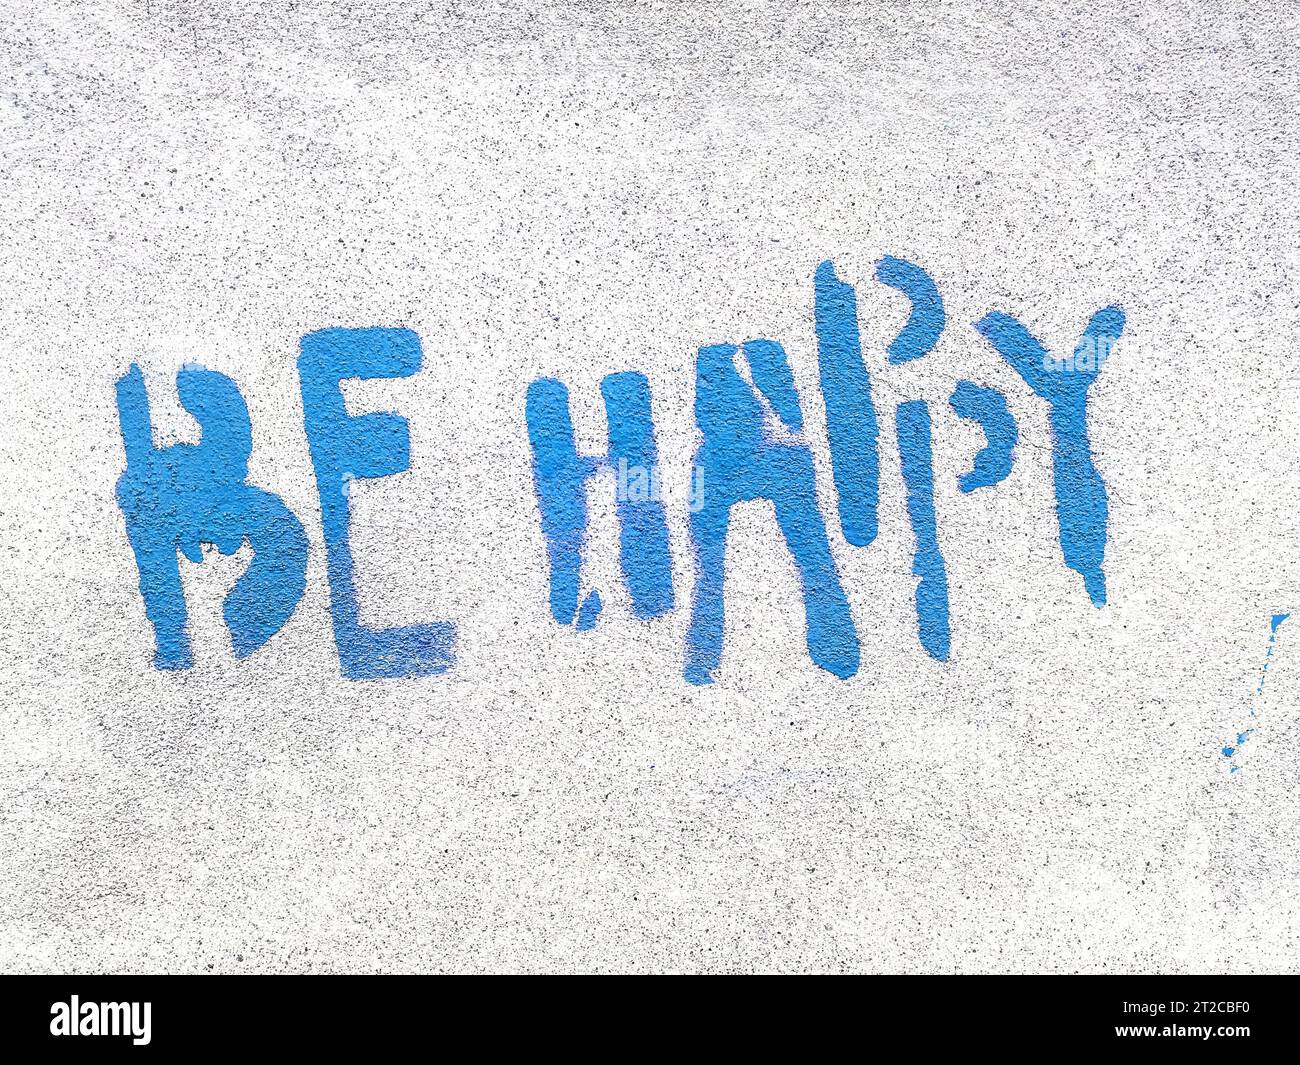 Bleu Be Happy écrit dans le style graffiti avec texture rugueuse isolée sur fond gris. Banque D'Images